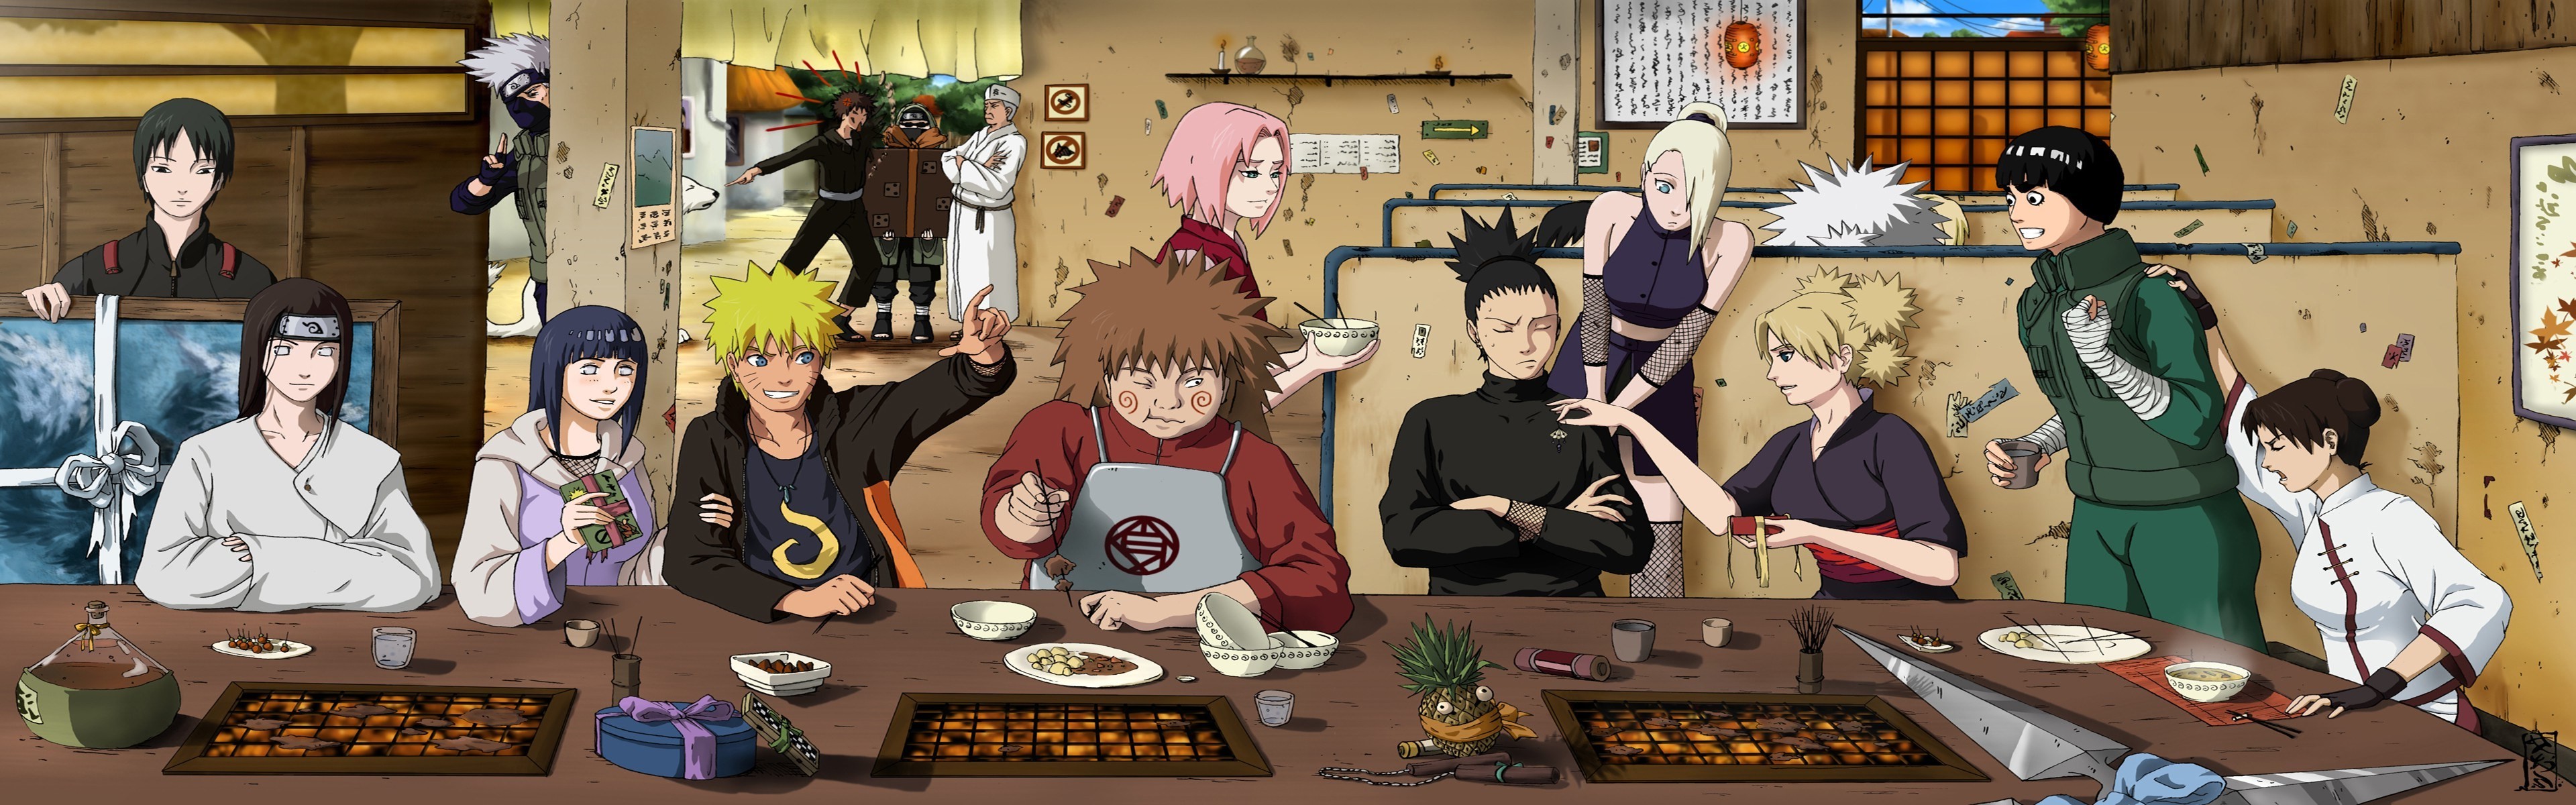 3840x1200, Naruto Shippuuden Manga Anime Rock Lee Tenten - Sakura Hinata Ino Temari Tenten - HD Wallpaper 